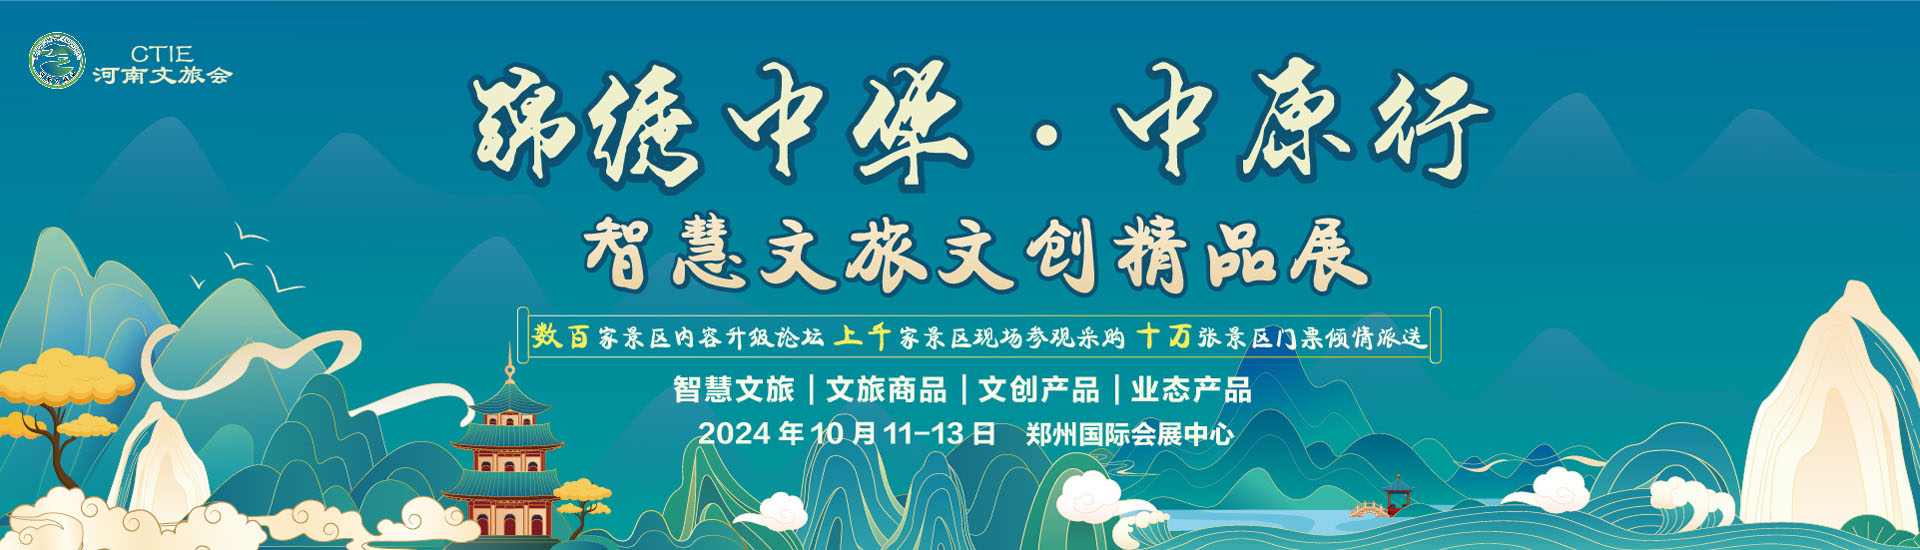 2024河南文化和旅游产业博览会